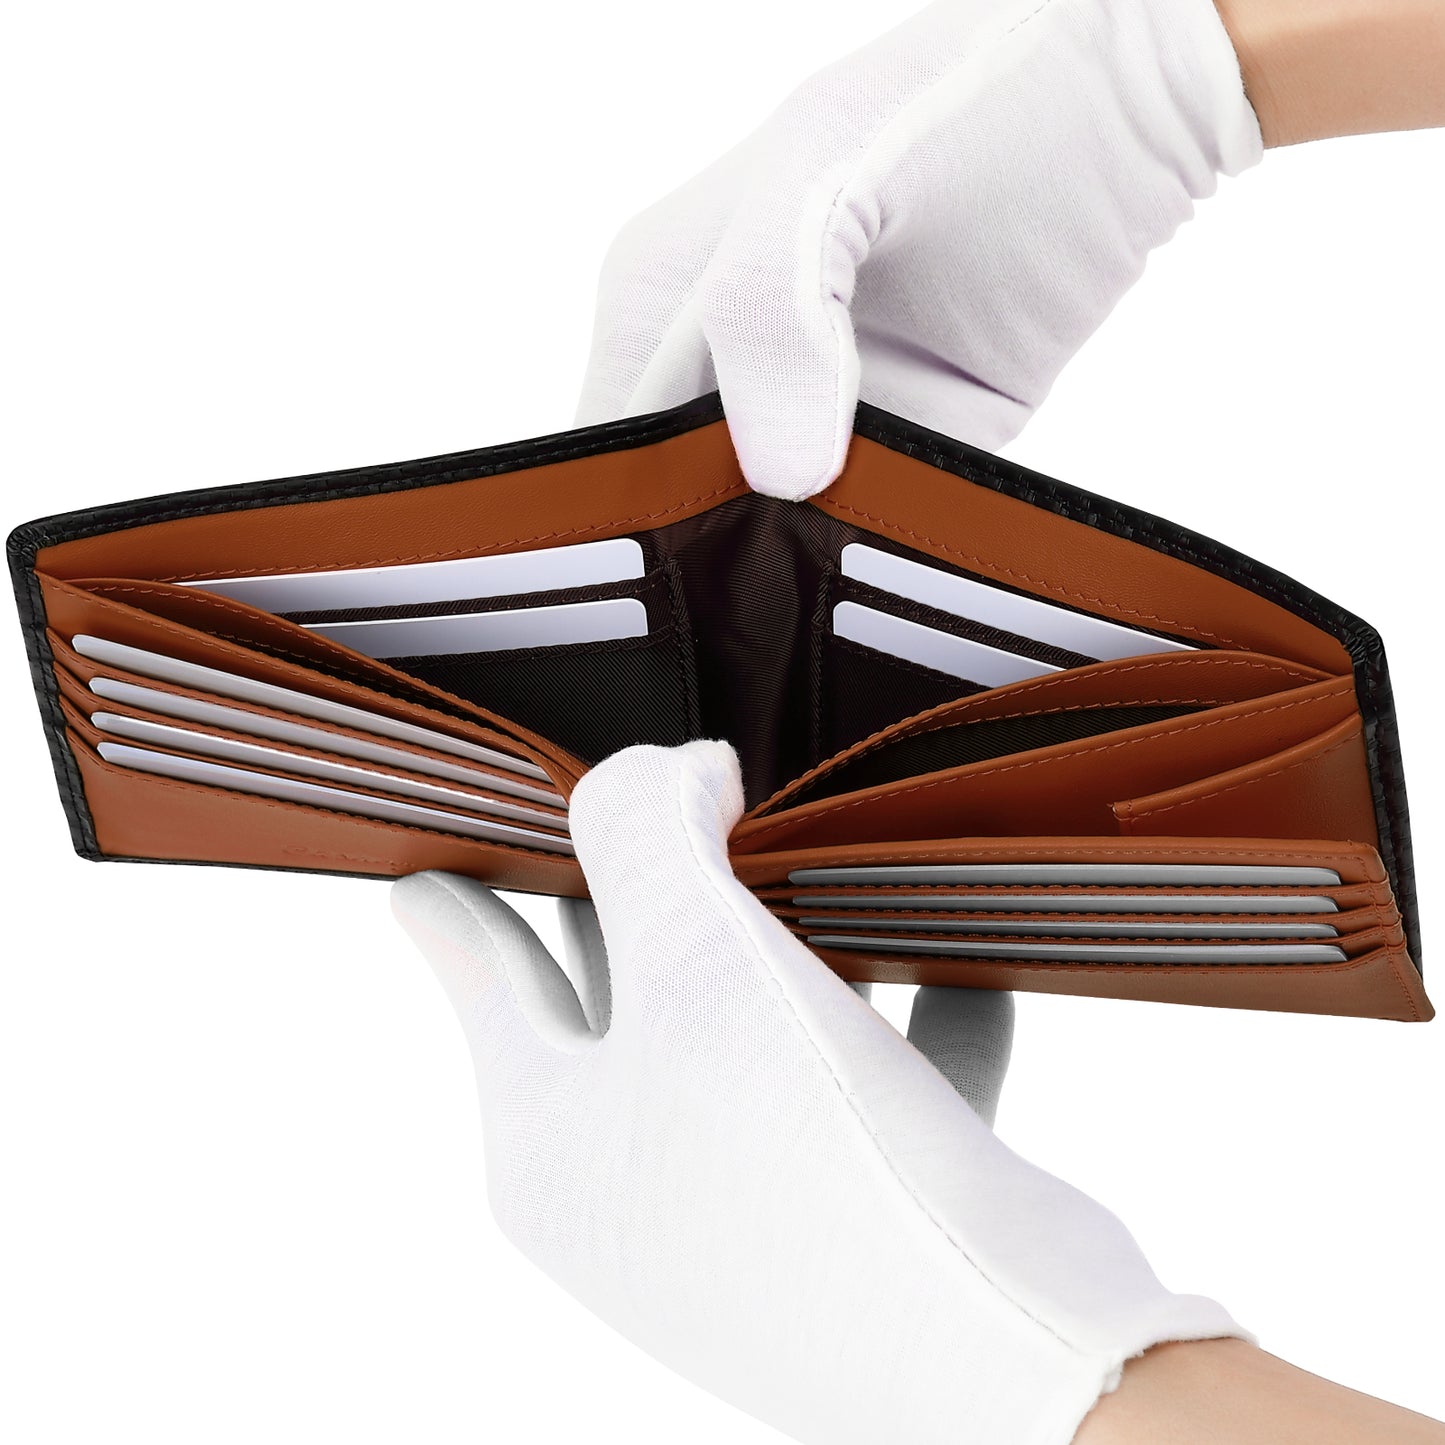 Carbon Leather Men's Wallet | Coin Box Design